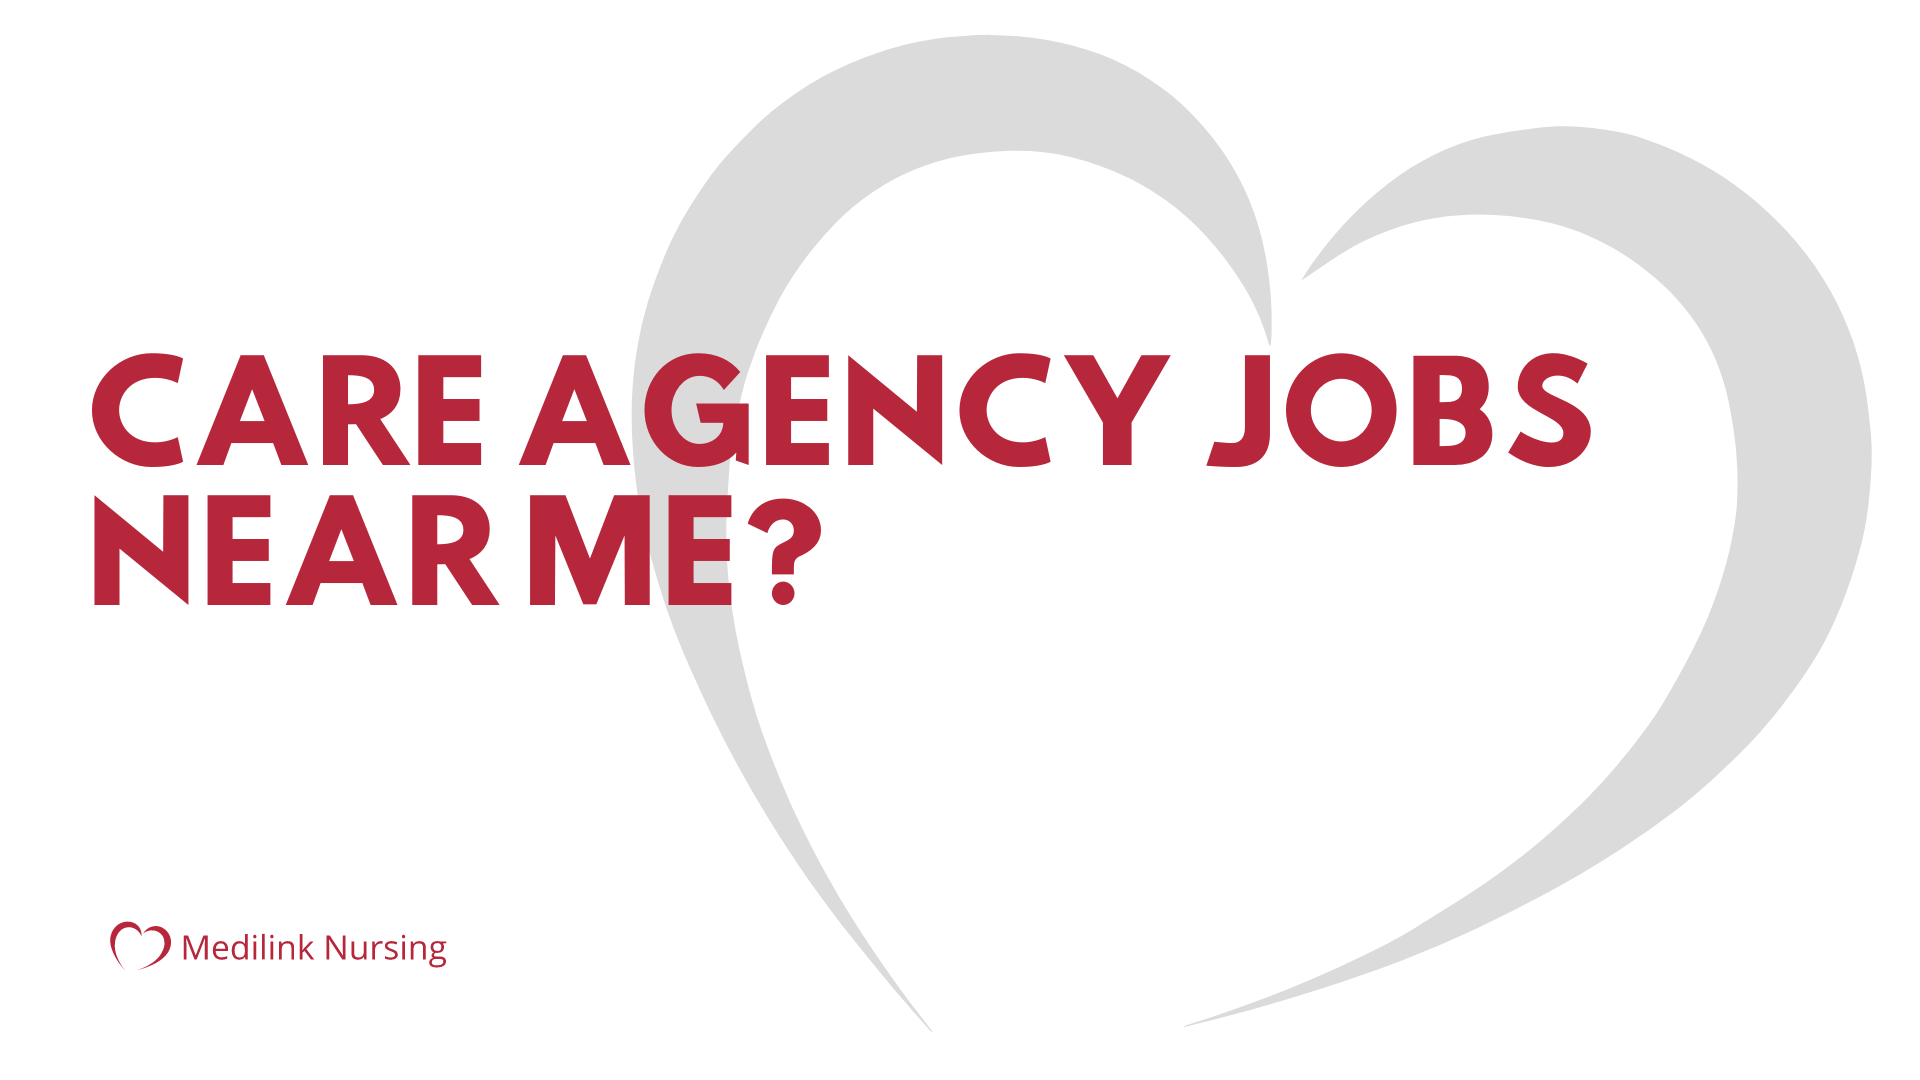 Care Agency Jobs Near Me?